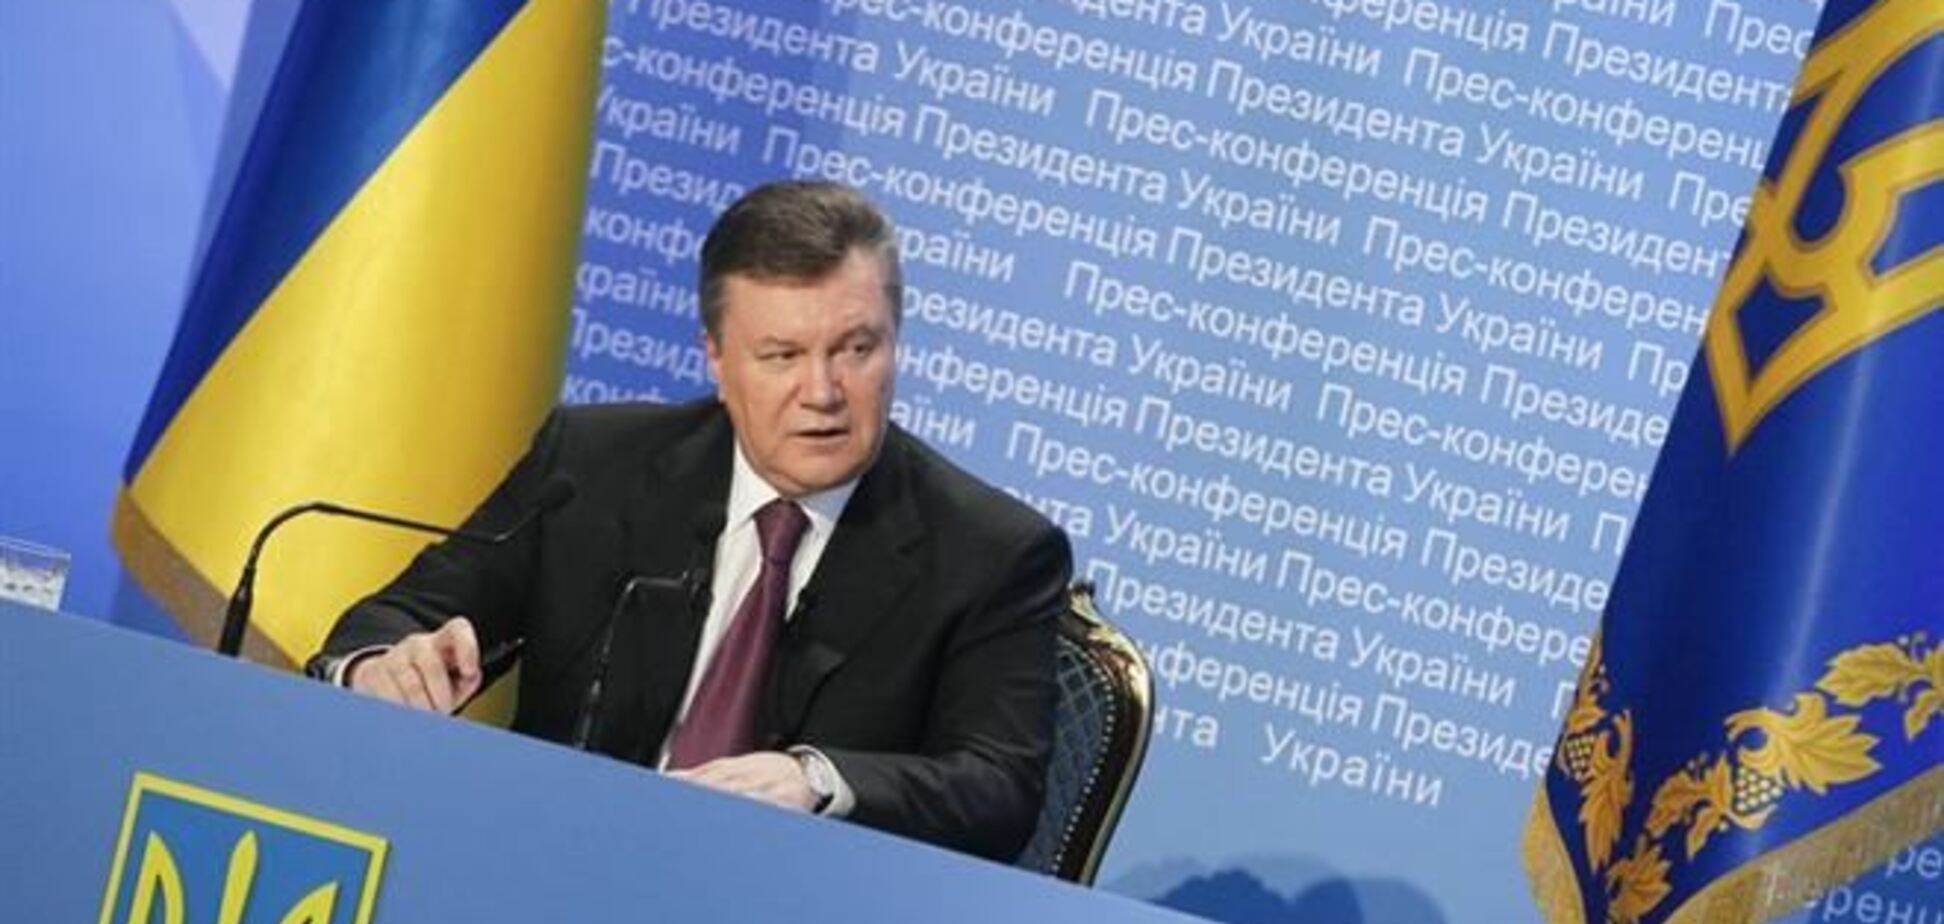  Президент распорядился торжественно отметить годовщину вхождения Крыма в состав Украины